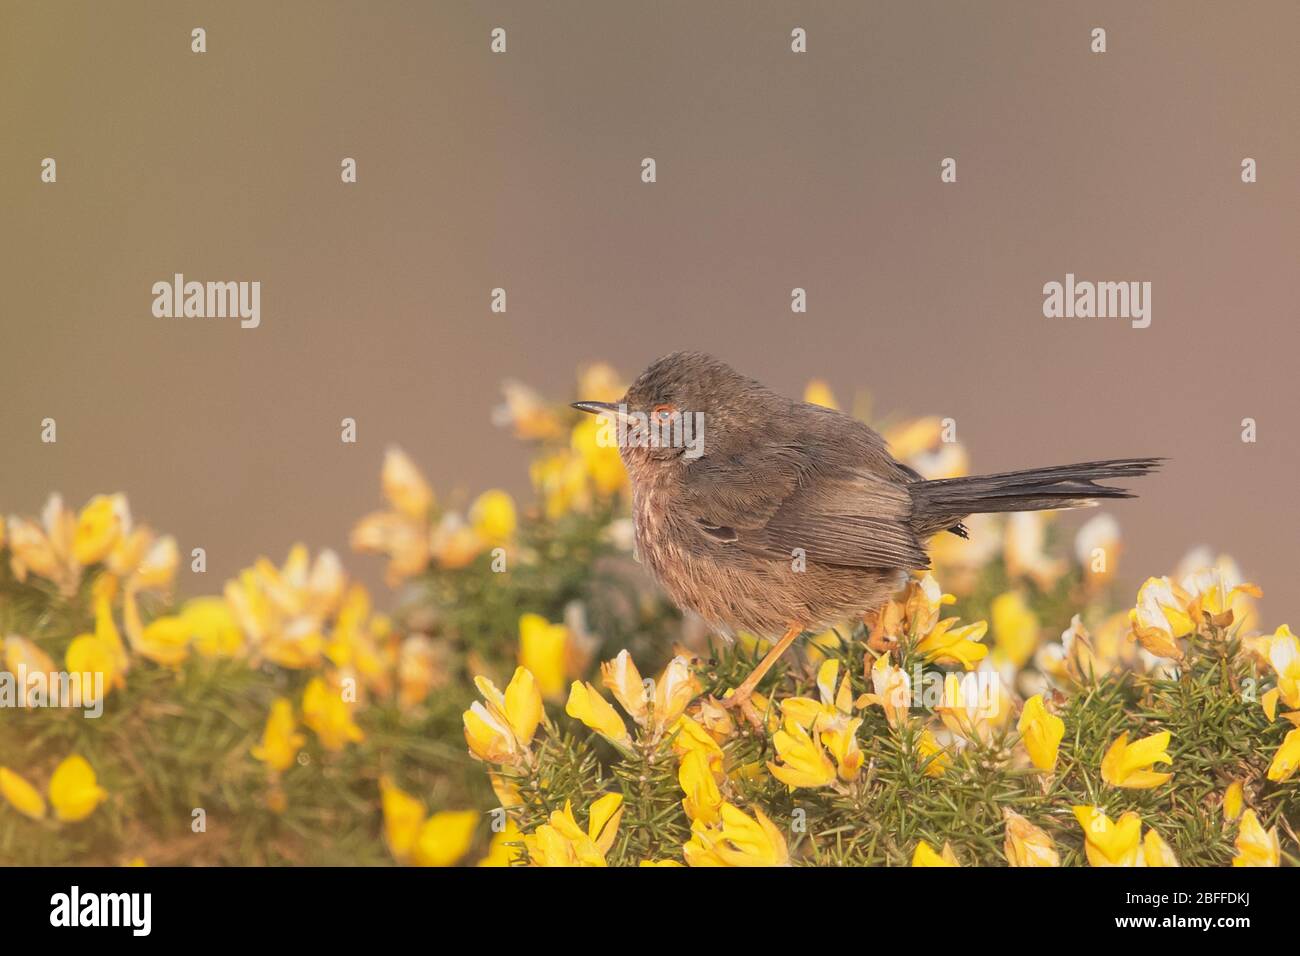 Dartford warbler, Surrey, UK Stock Photo